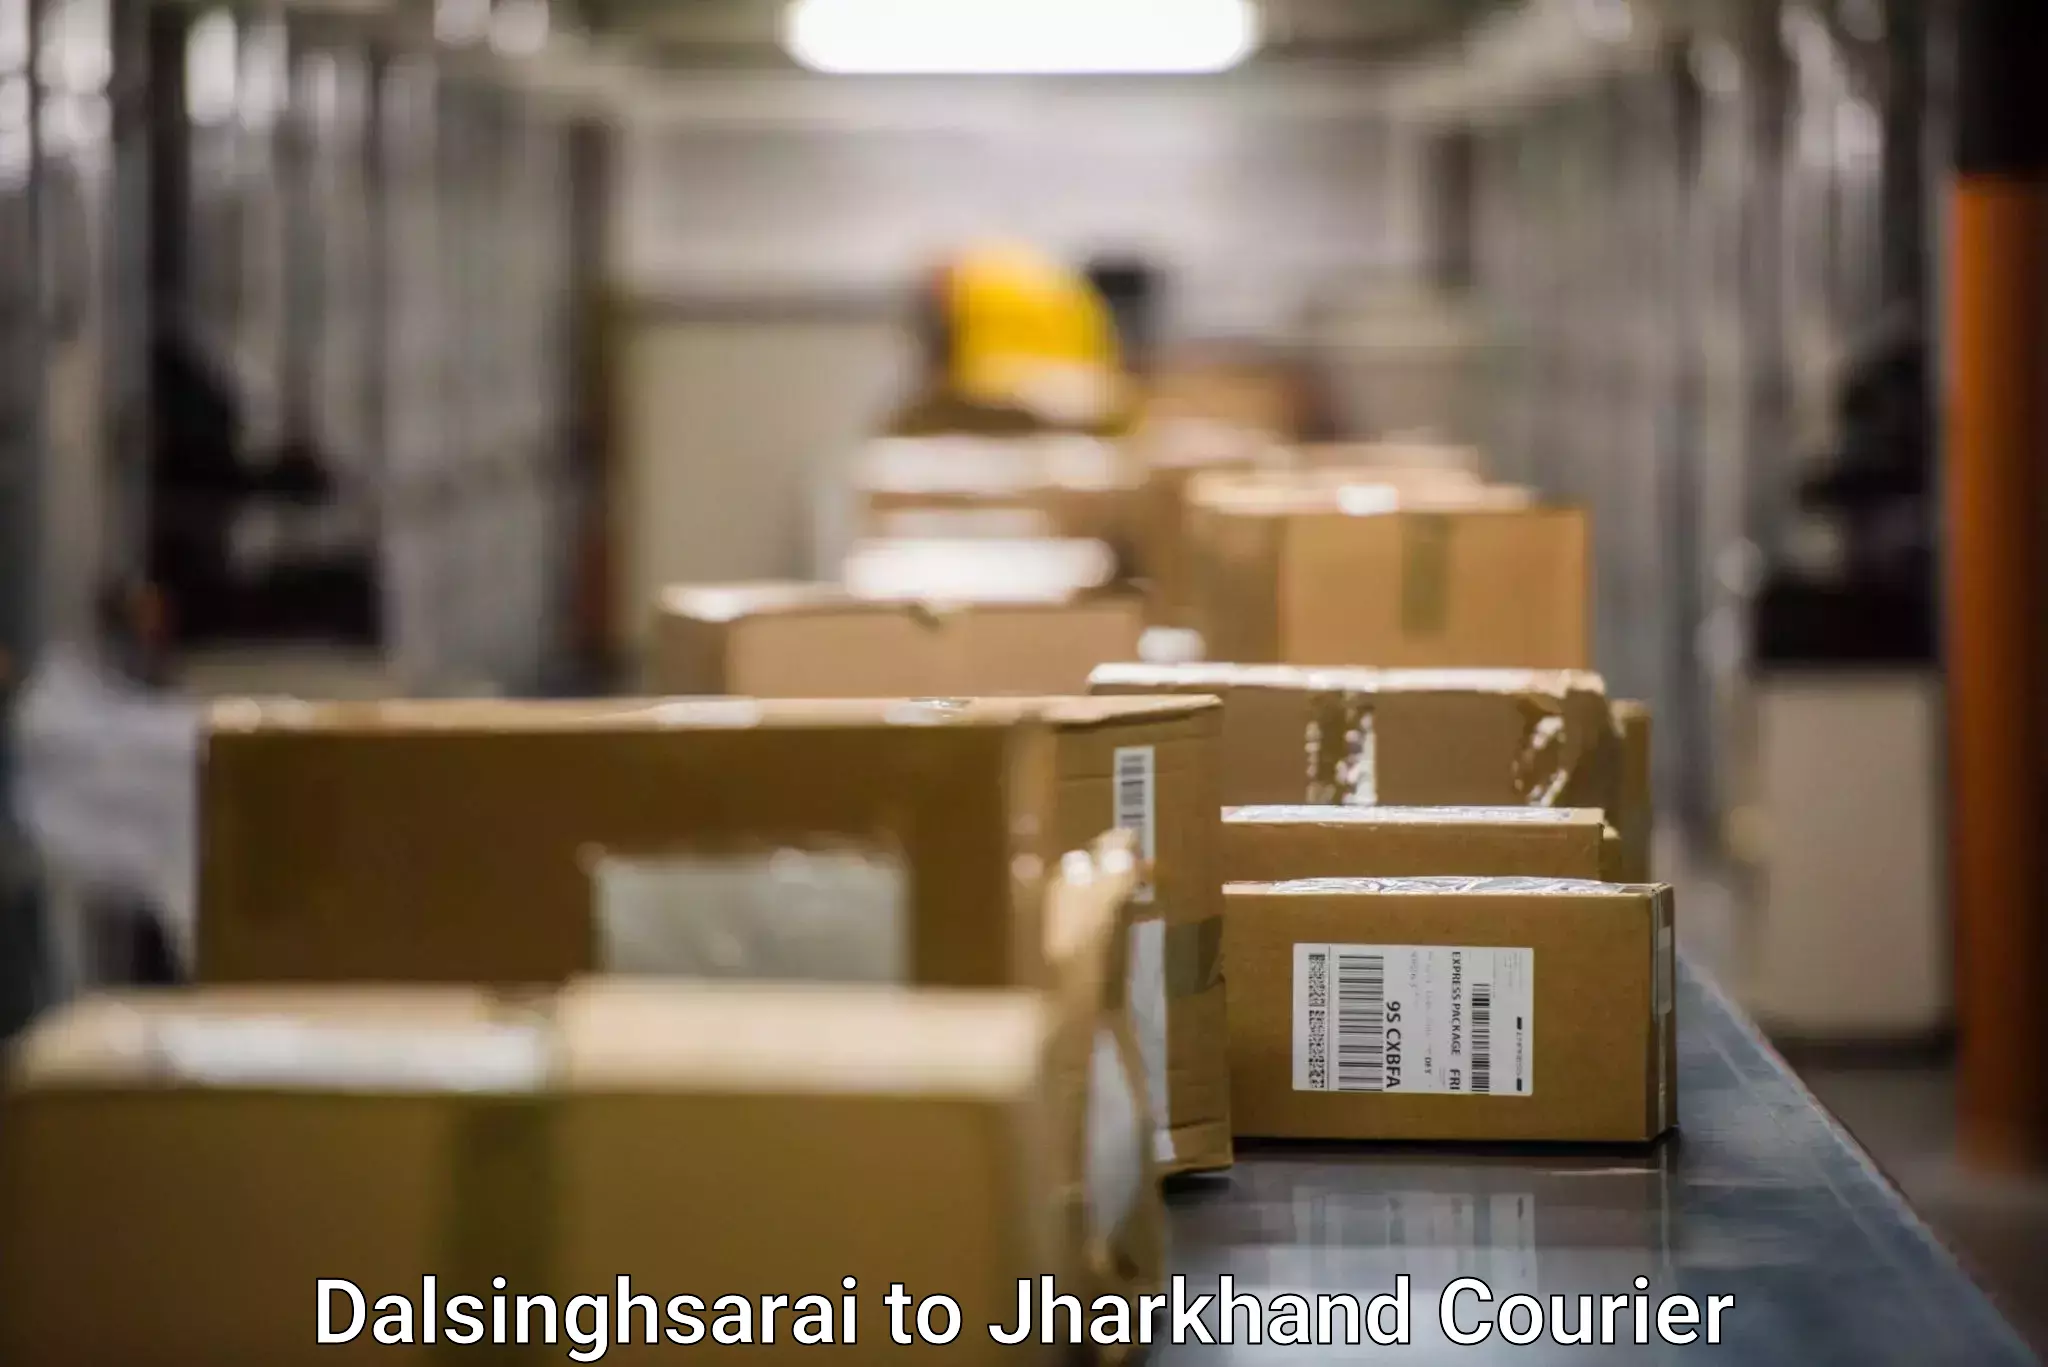 Punctual parcel services Dalsinghsarai to East Singhbhum